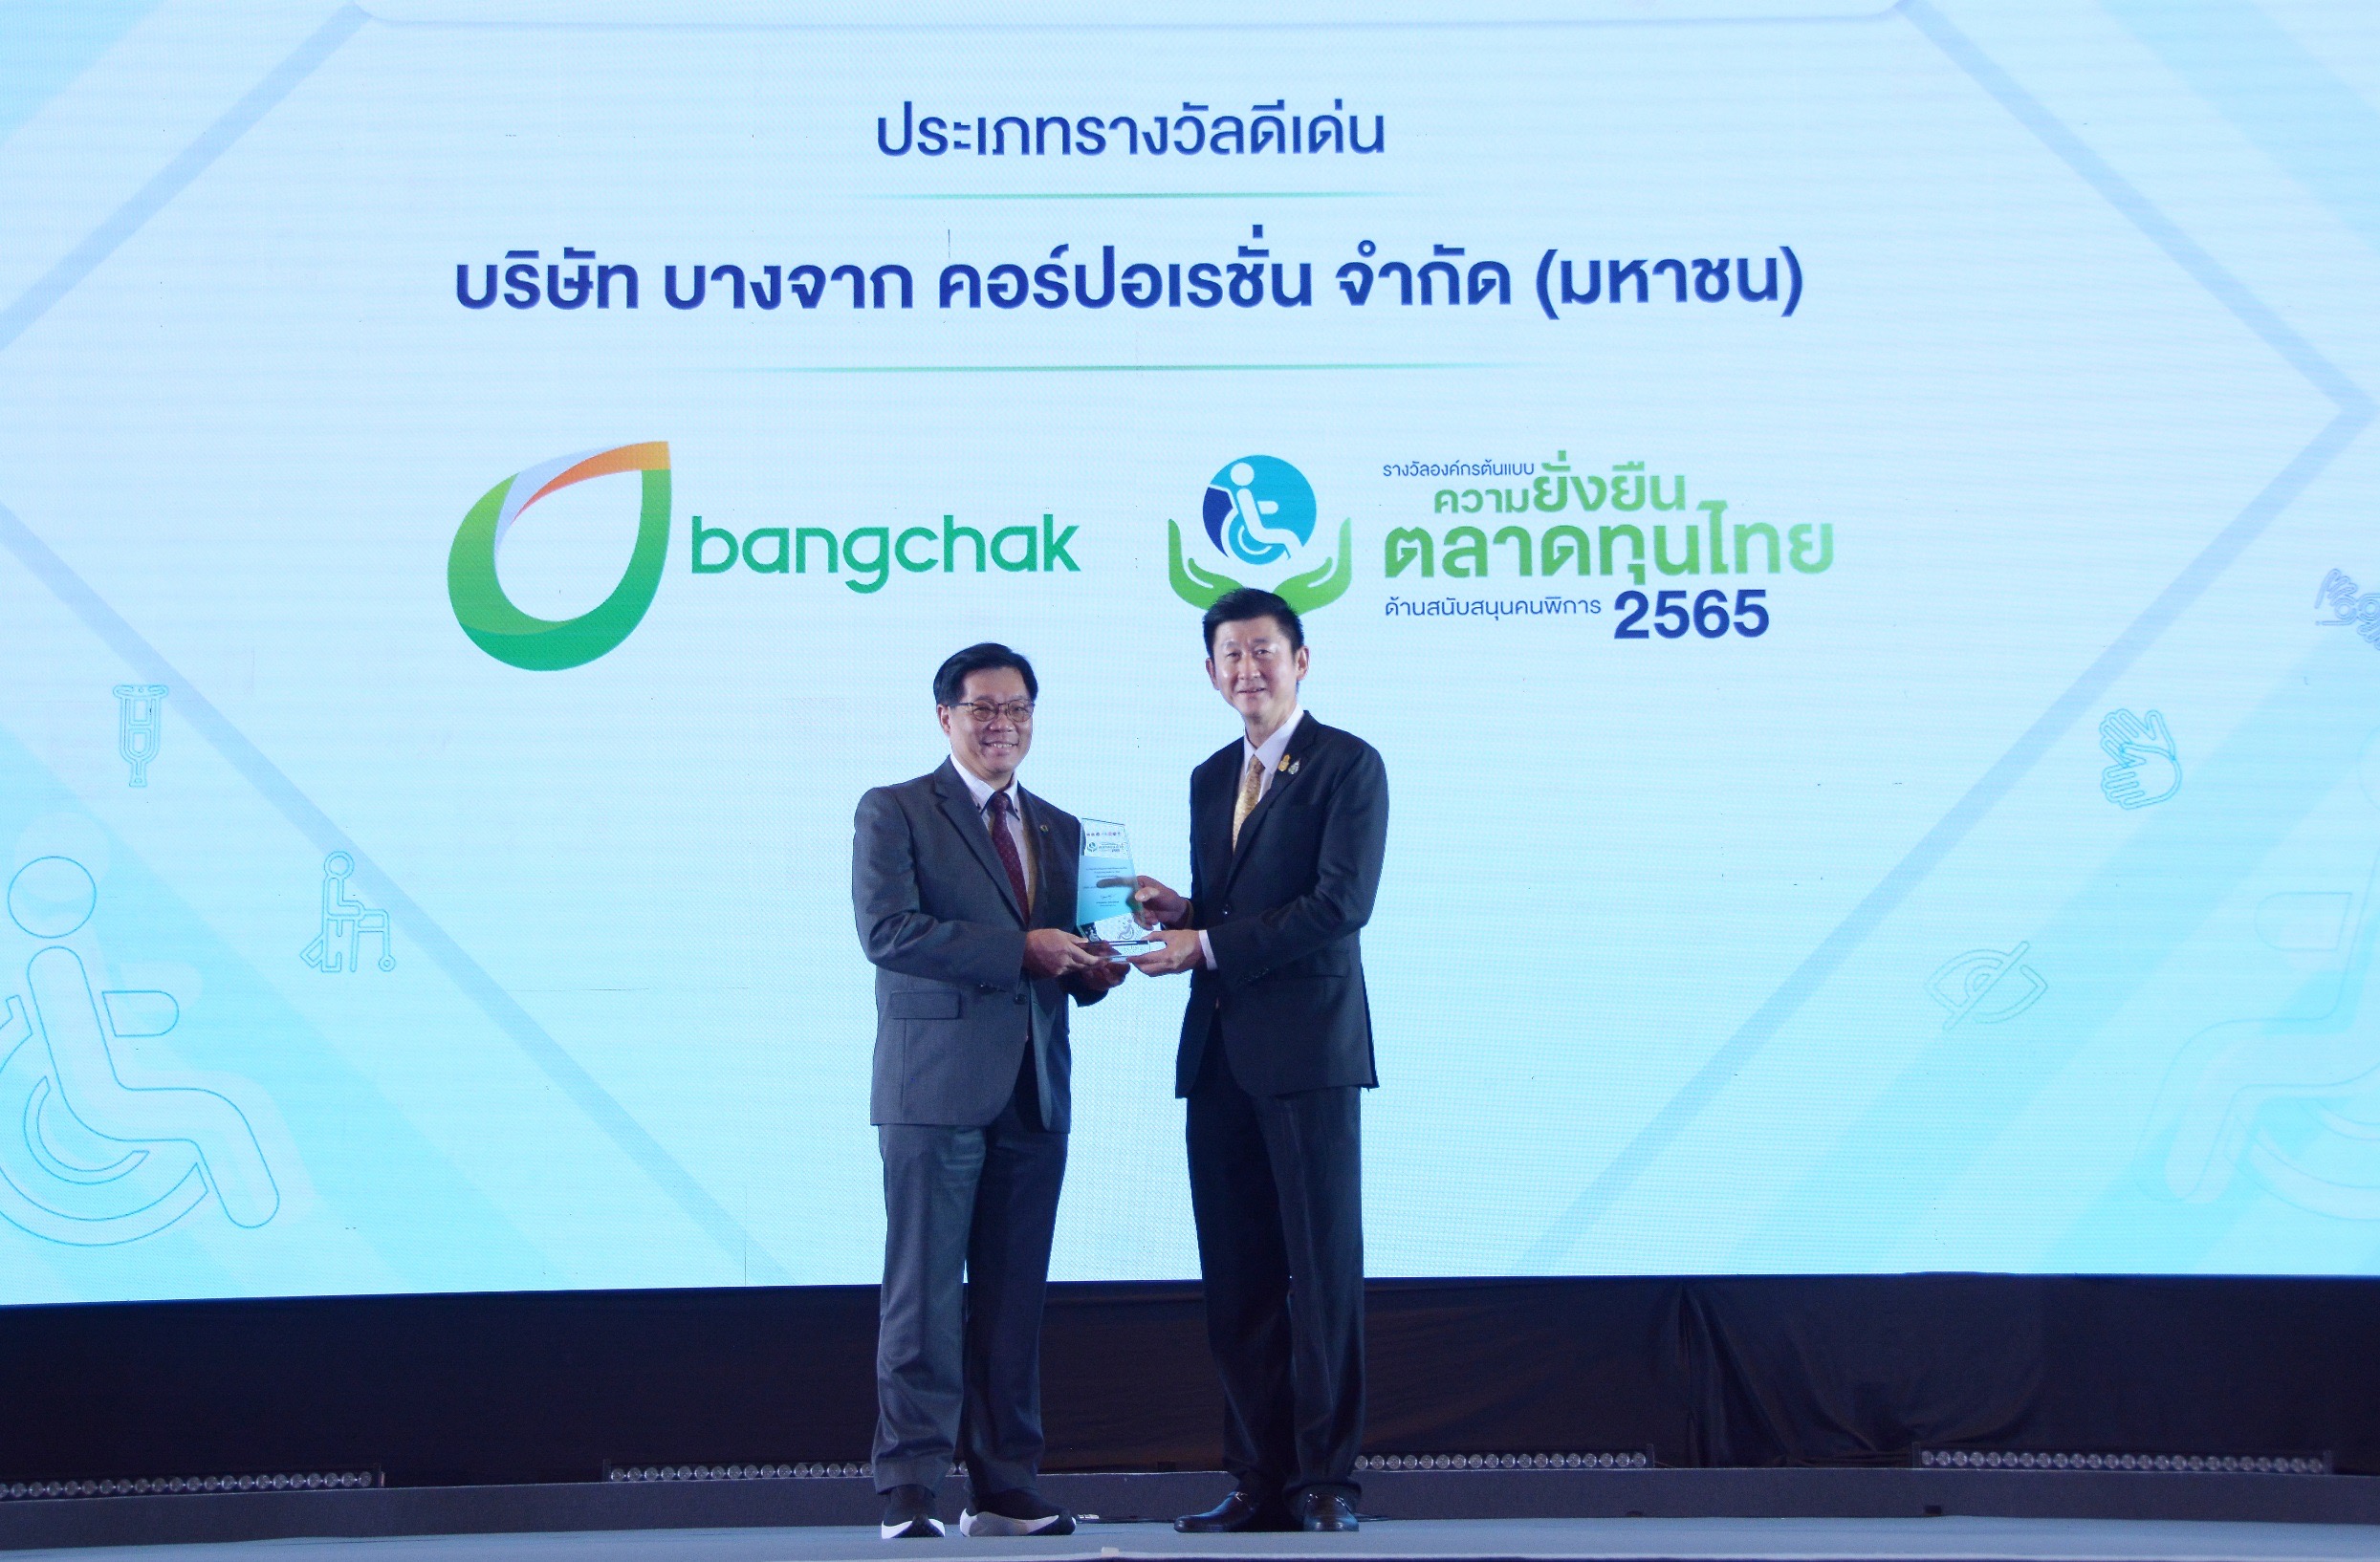 บางจากฯ รับรางวัลดีเด่น องค์กรต้นแบบความยั่งยืนในตลาดทุนไทย  ด้านสนับสนุนคนพิการปี 2565